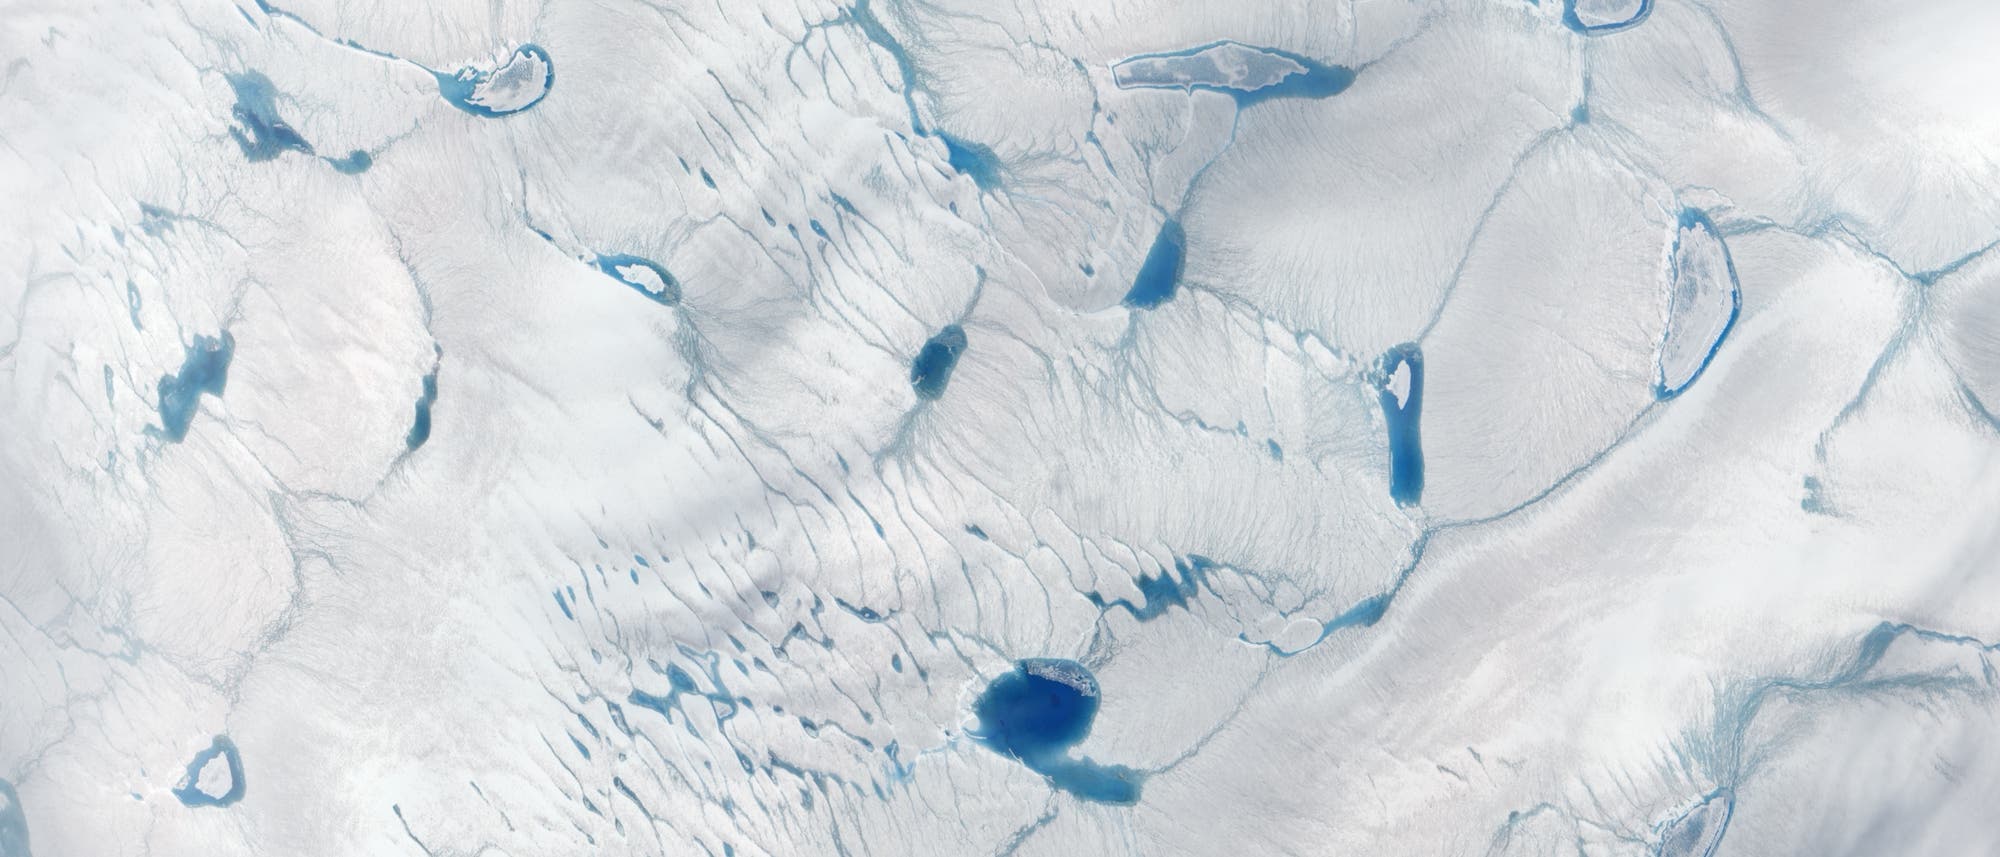 Eisdecke in Grönland 2014 und 2016